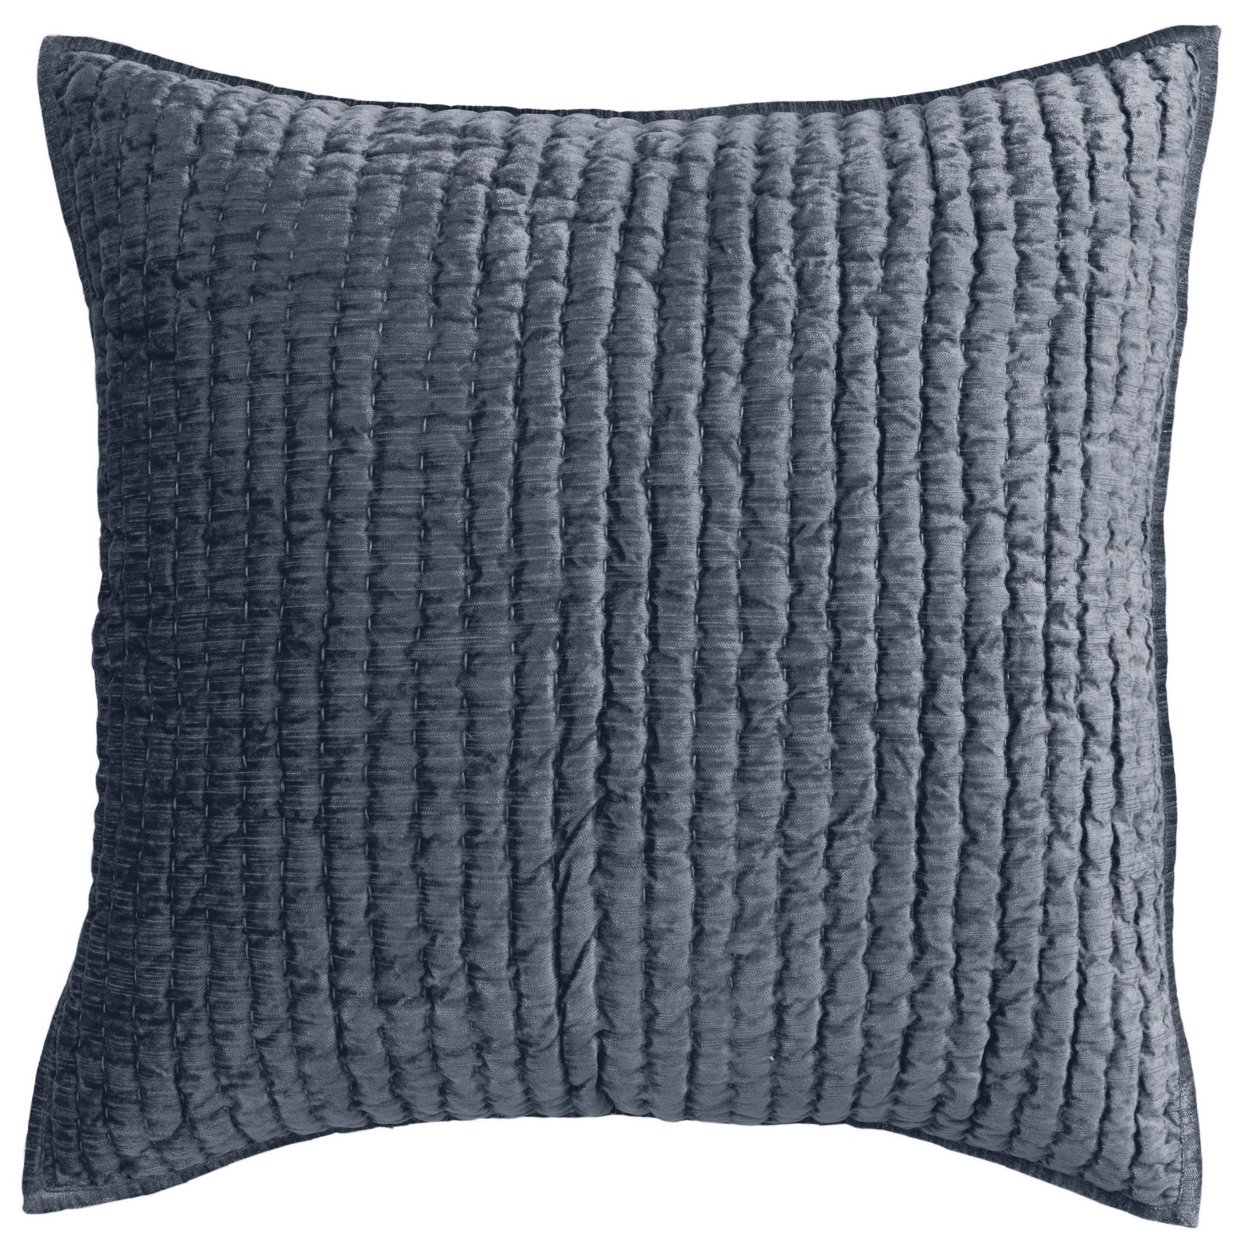 Bili 26 Inch Square Hand Stitched Euro Pillow Sham, Rayon Velvet, Fog Blue- Saltoro Sherpi